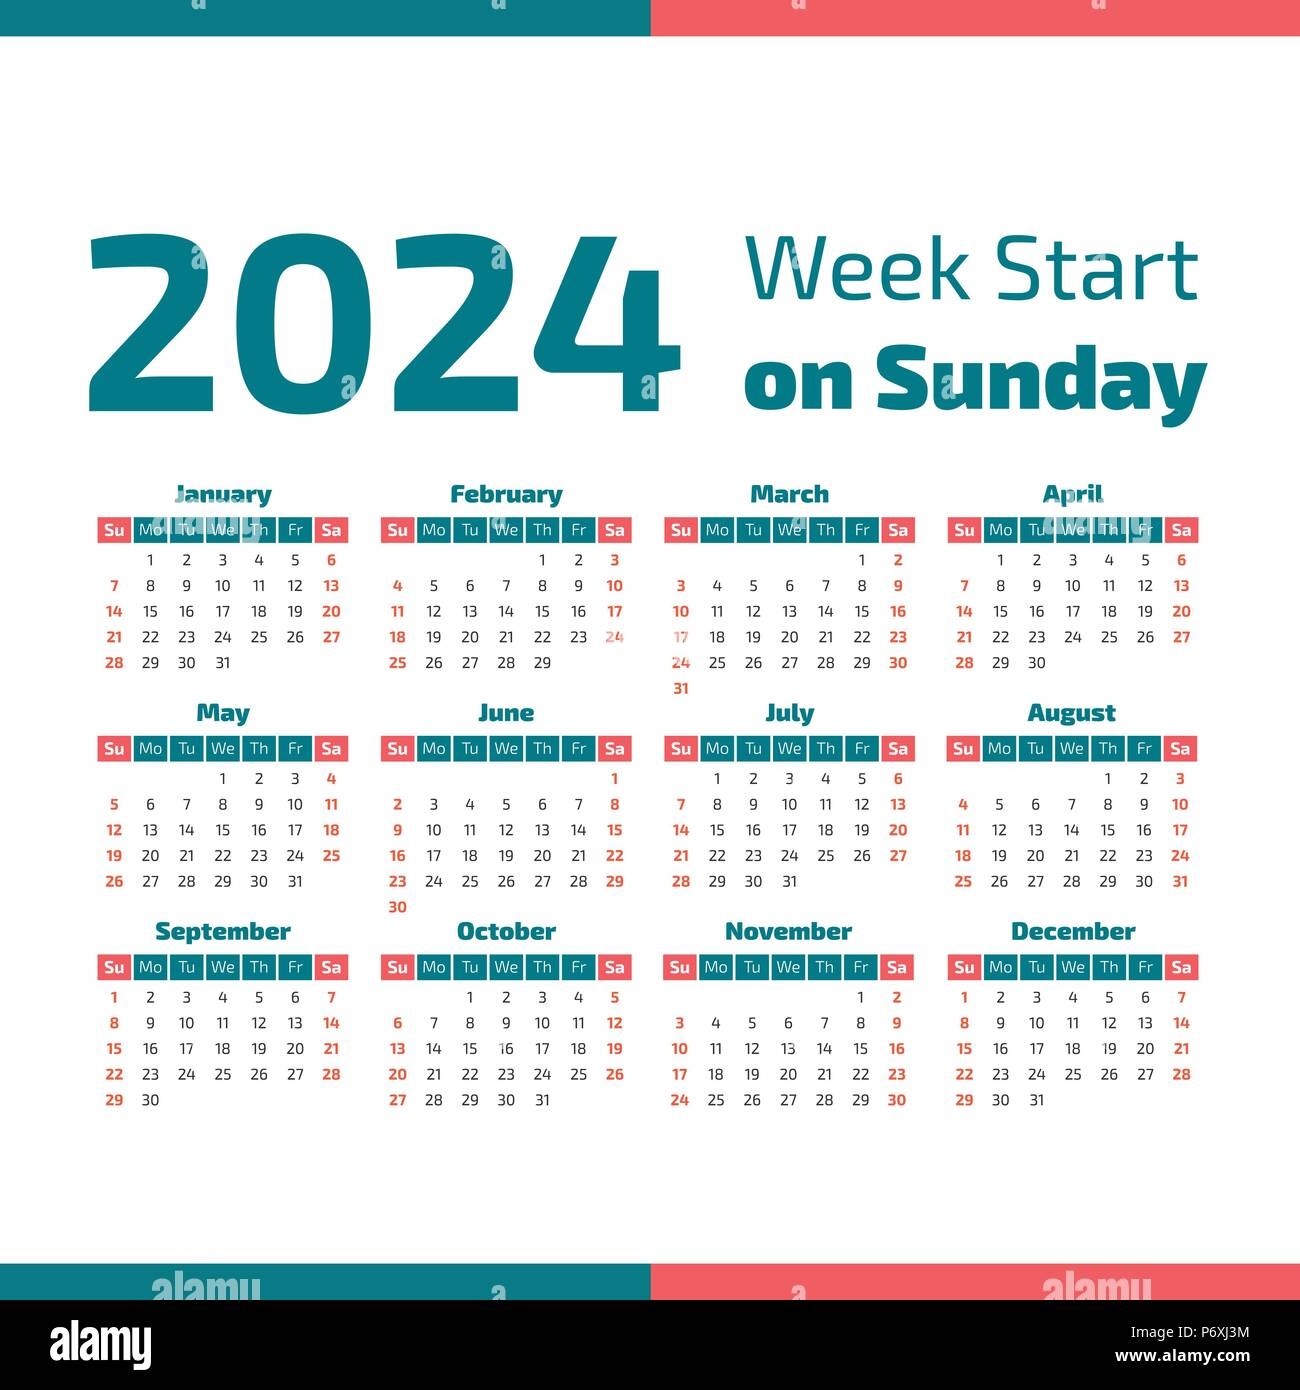 2024 Numbered Weeks Calendar Year 2020 Printfree Calendar 2024 - Free Printable Calendar 2024 With Numbered Weeks